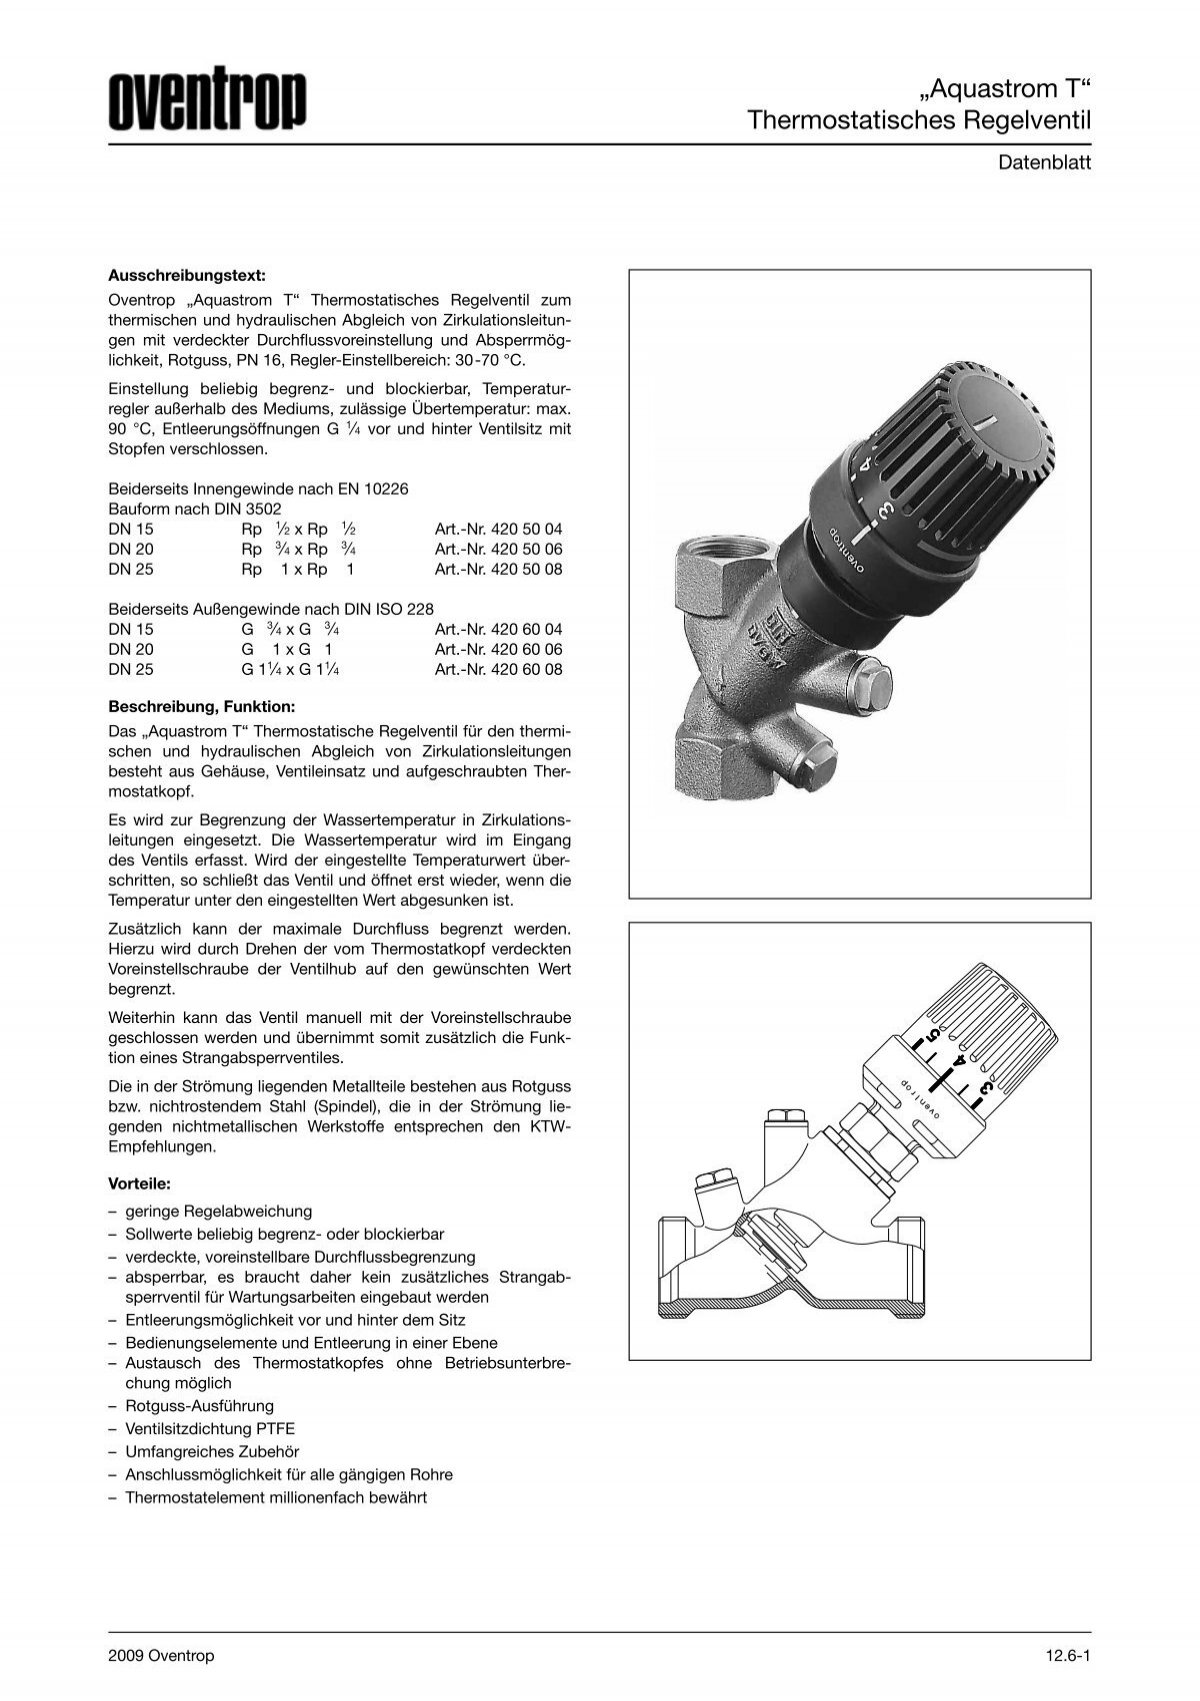 Aquastrom T“ Thermostatisches Regelventil - Oventrop